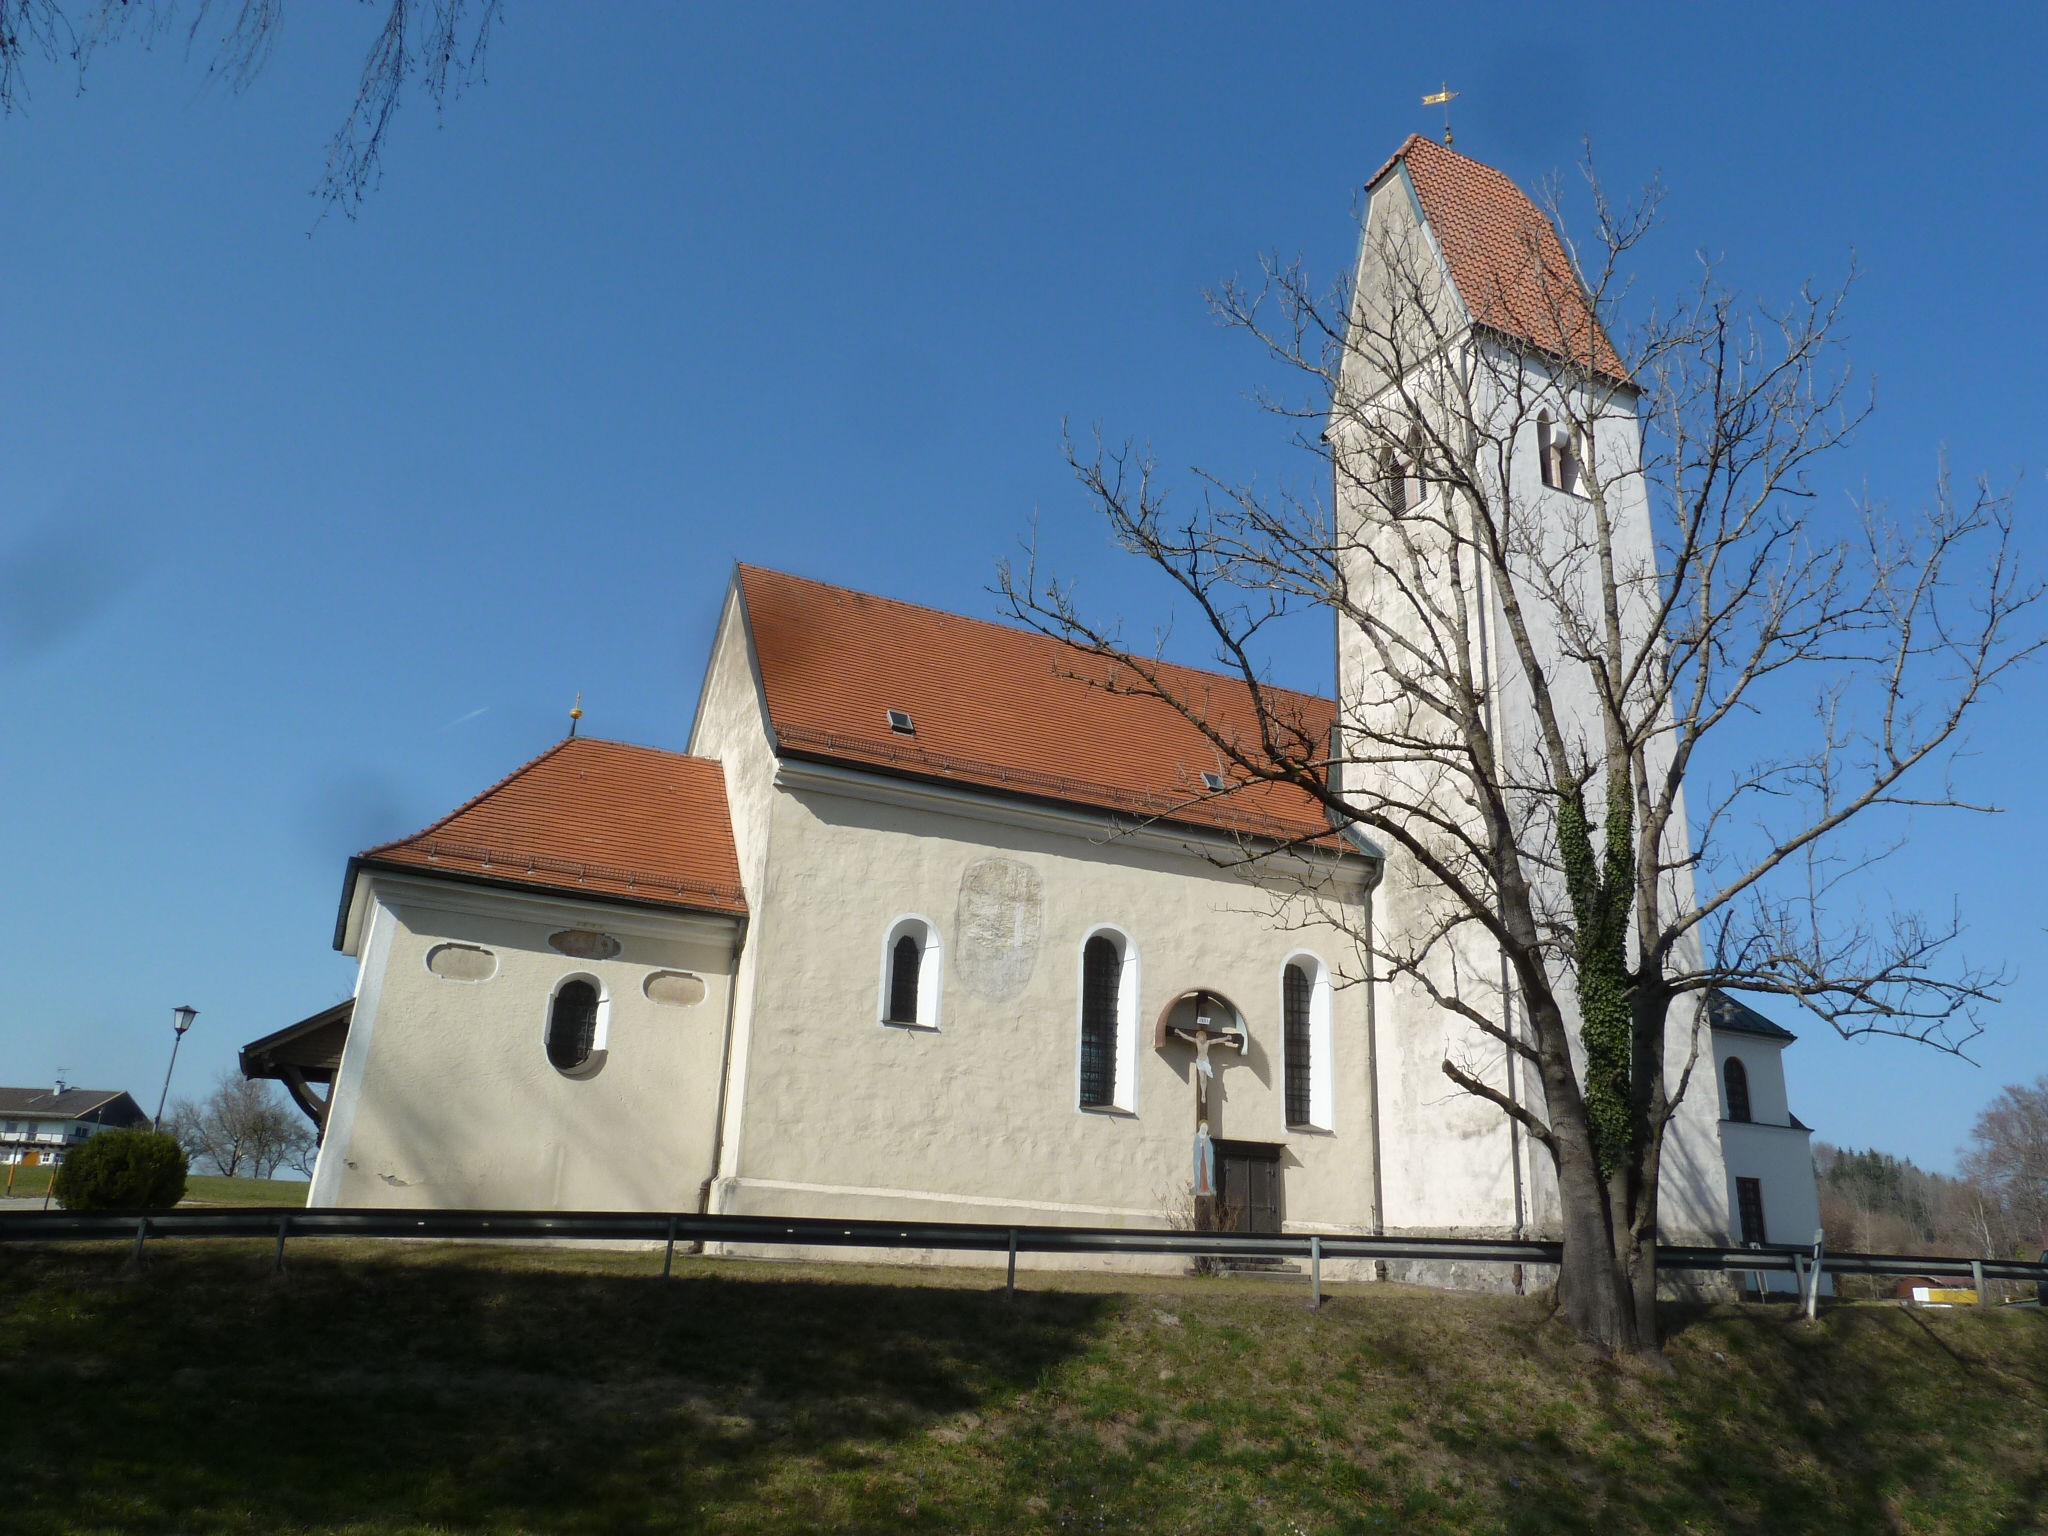 Wallfahrtskirche St. Salvator, Rimsting, vom gegenüberliegenden Fußweg aus gesehen